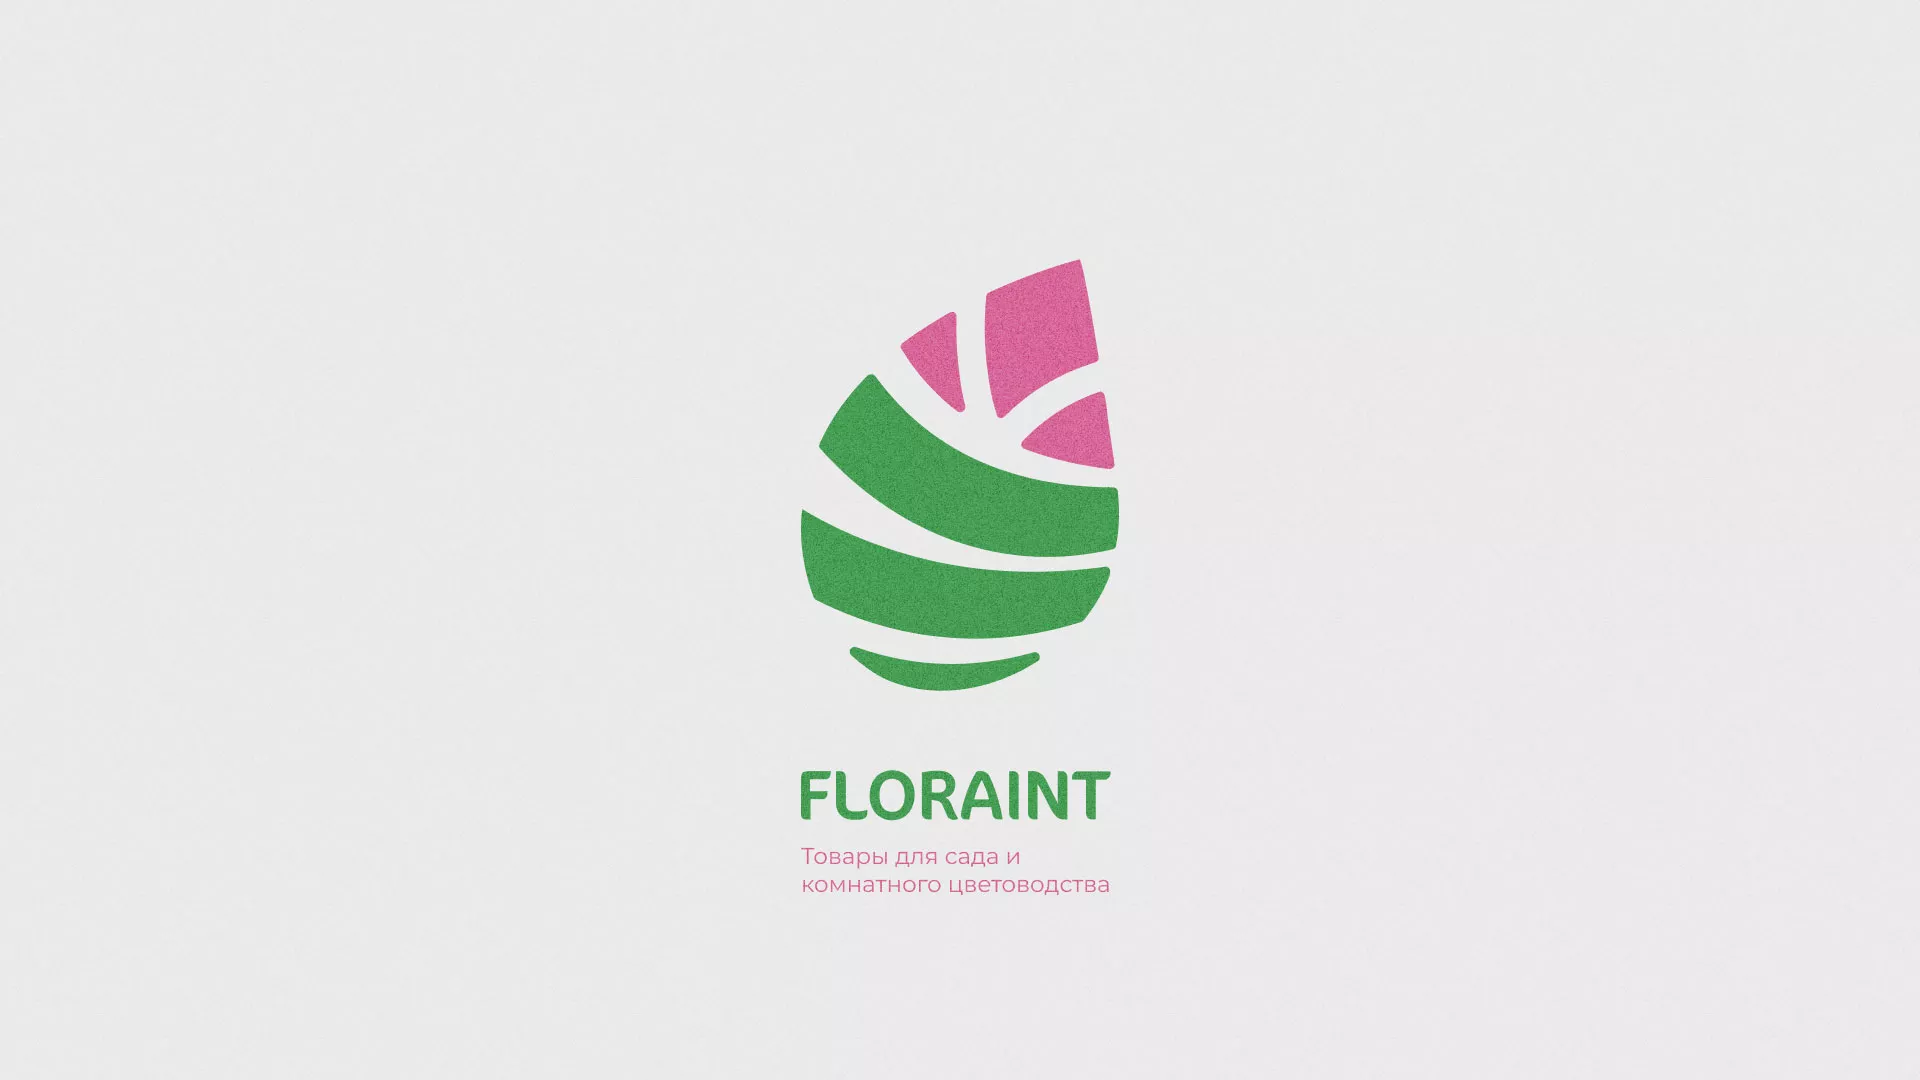 Разработка оформления профиля Instagram для магазина «Floraint» в Торопце